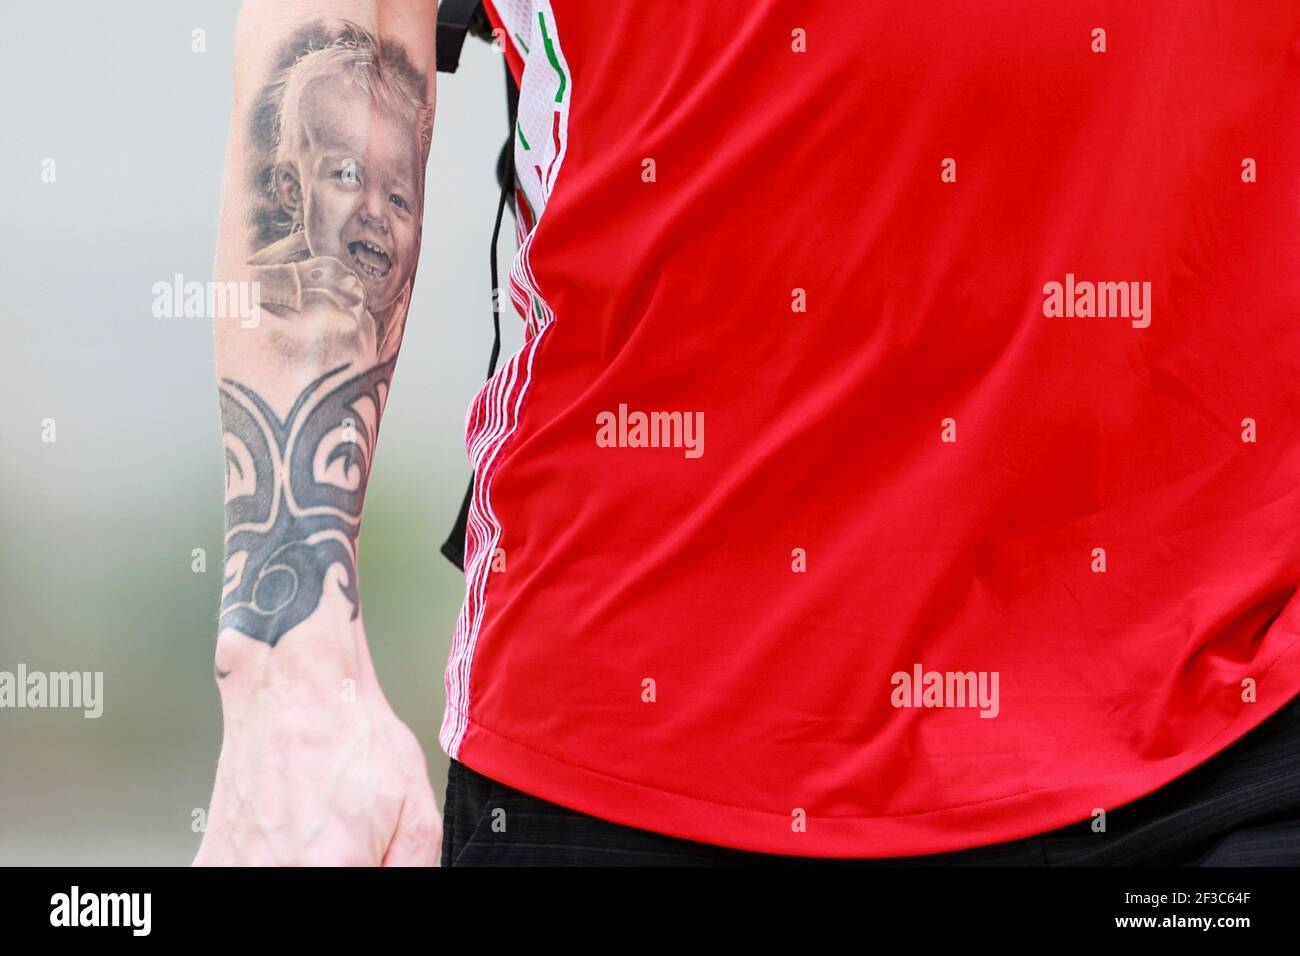 RAIKKONEN Kimi (fin), Scuderia Ferrari SF71H, tattoo details during 2018 Formula 1 FIA world championship, Bahrain Grand Prix, at Sakhir from April 5 to 8 - Photo DPPI Stock Photo